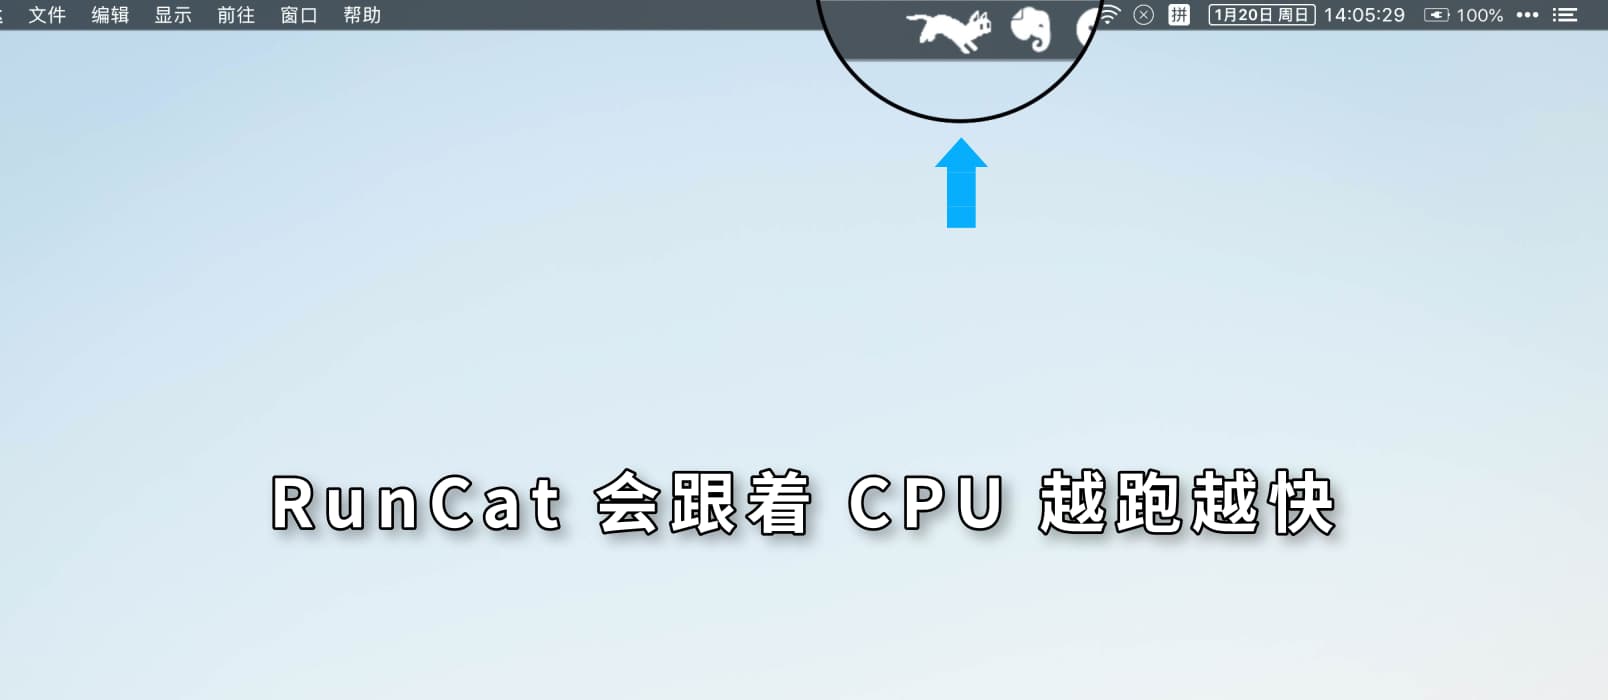 RunCat - 在 macOS 顶部菜单栏随 CPU 越跑越快的猫 1